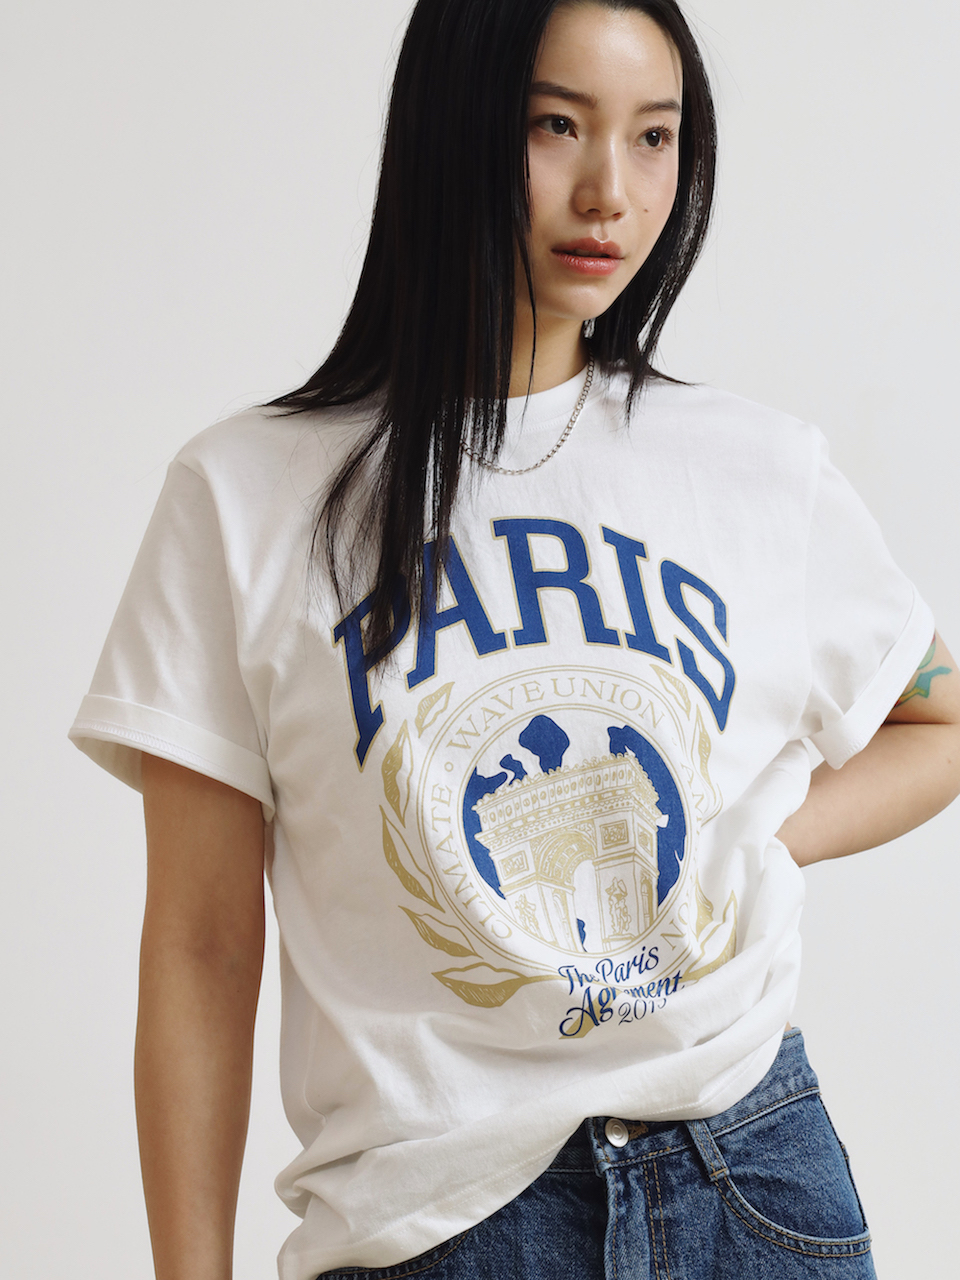 Paris short sleeve T-shirt white